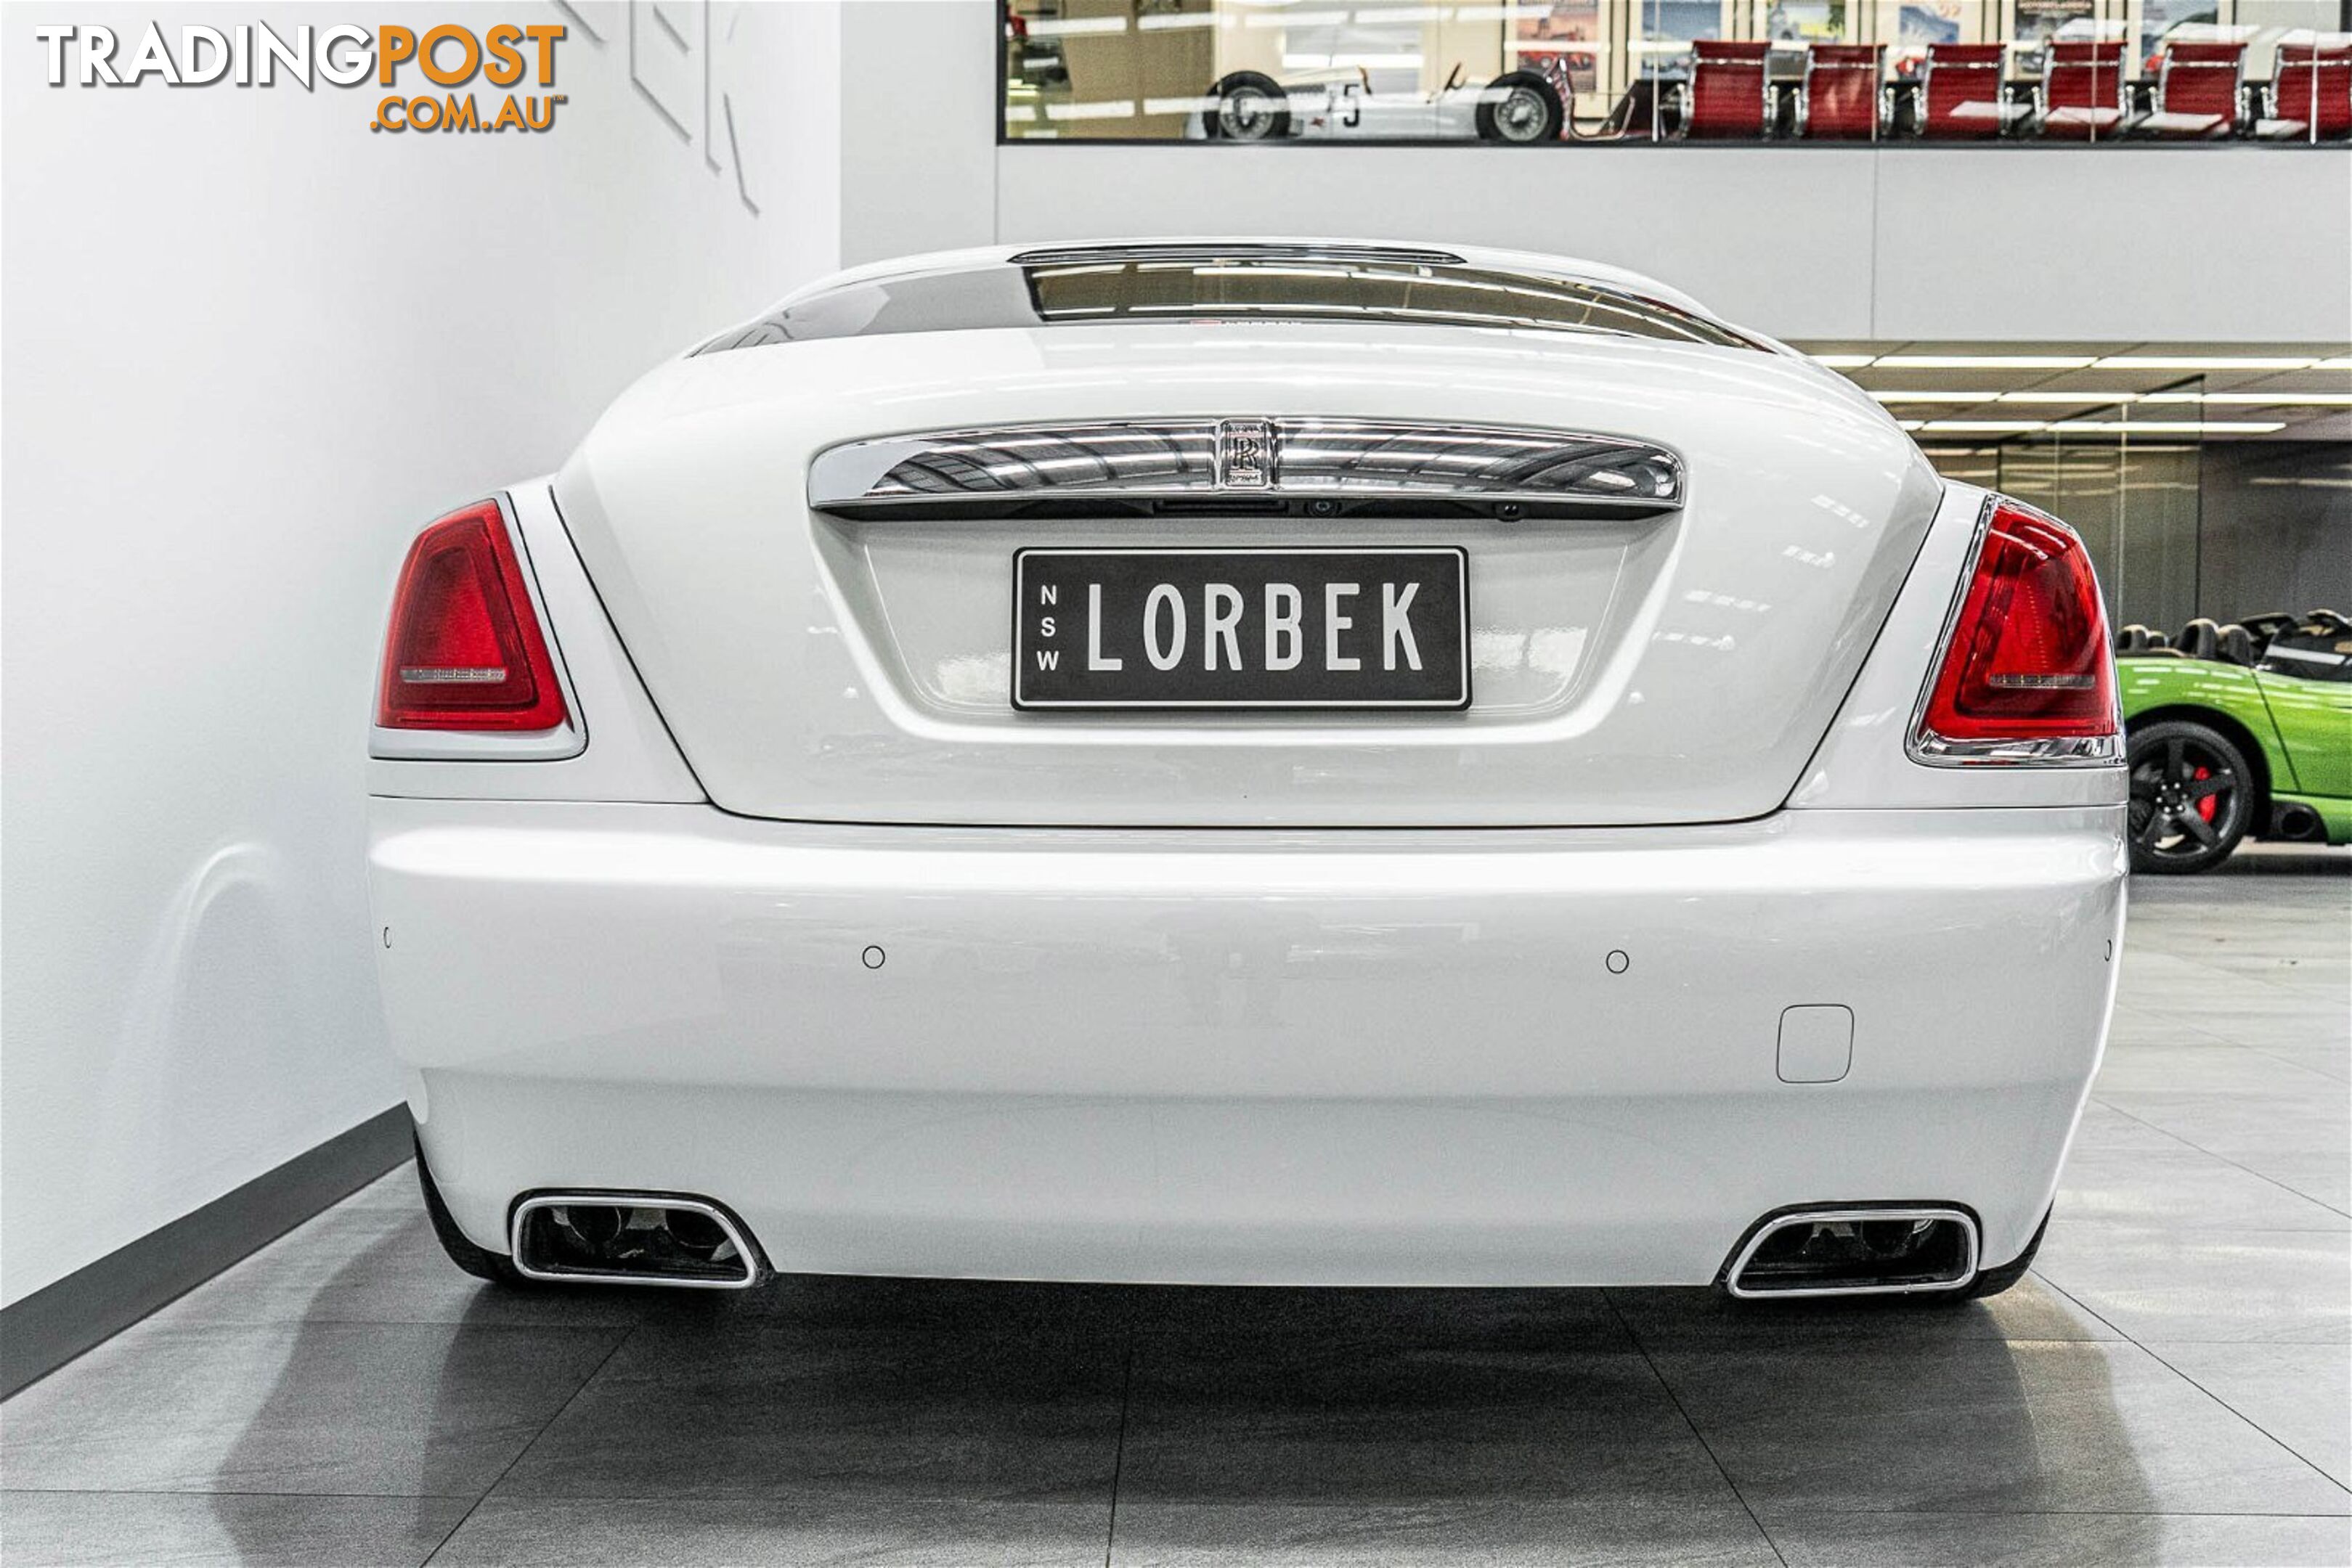 2014 Rolls-Royce Wraith  